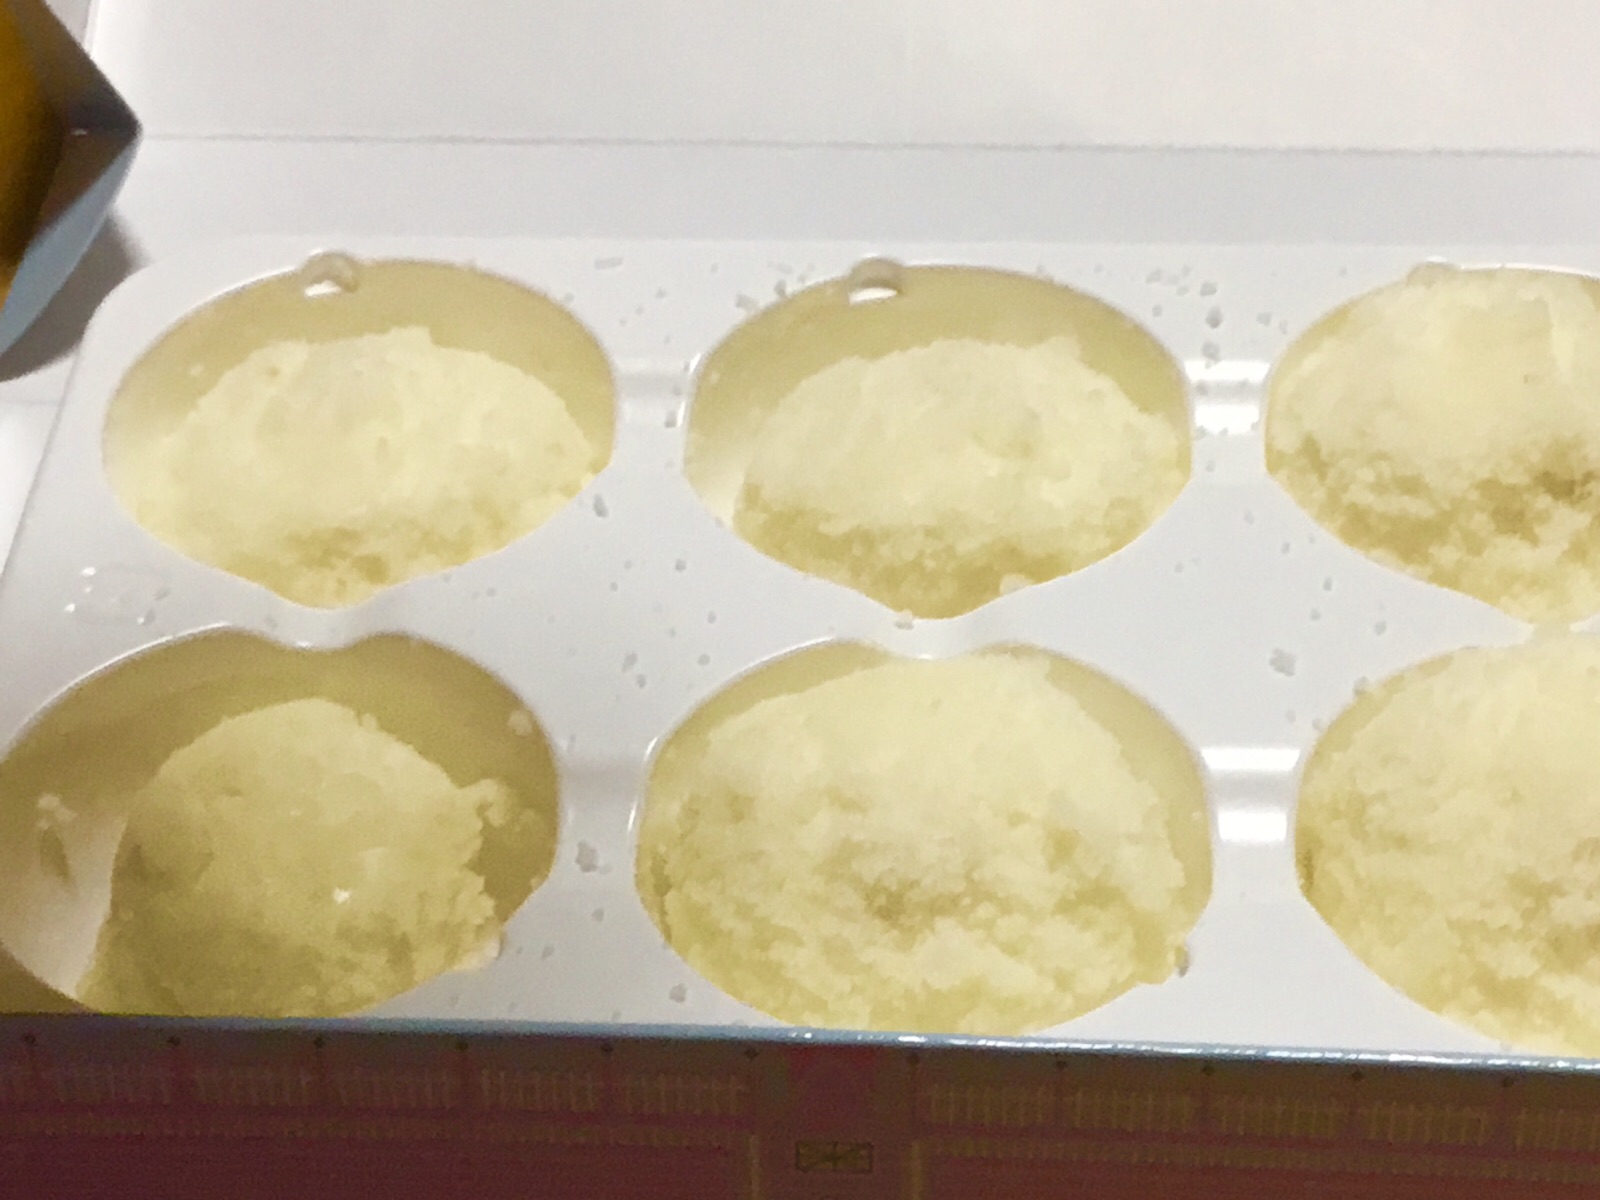 東京ginzaの レアチーズケーキを 頂きました シラネパック 宝石会社様用 ビニール製品販売 抜き型枠販売 ハードボード販売 さくらんぼ500g800g1kg化粧箱ウレタン付き販売